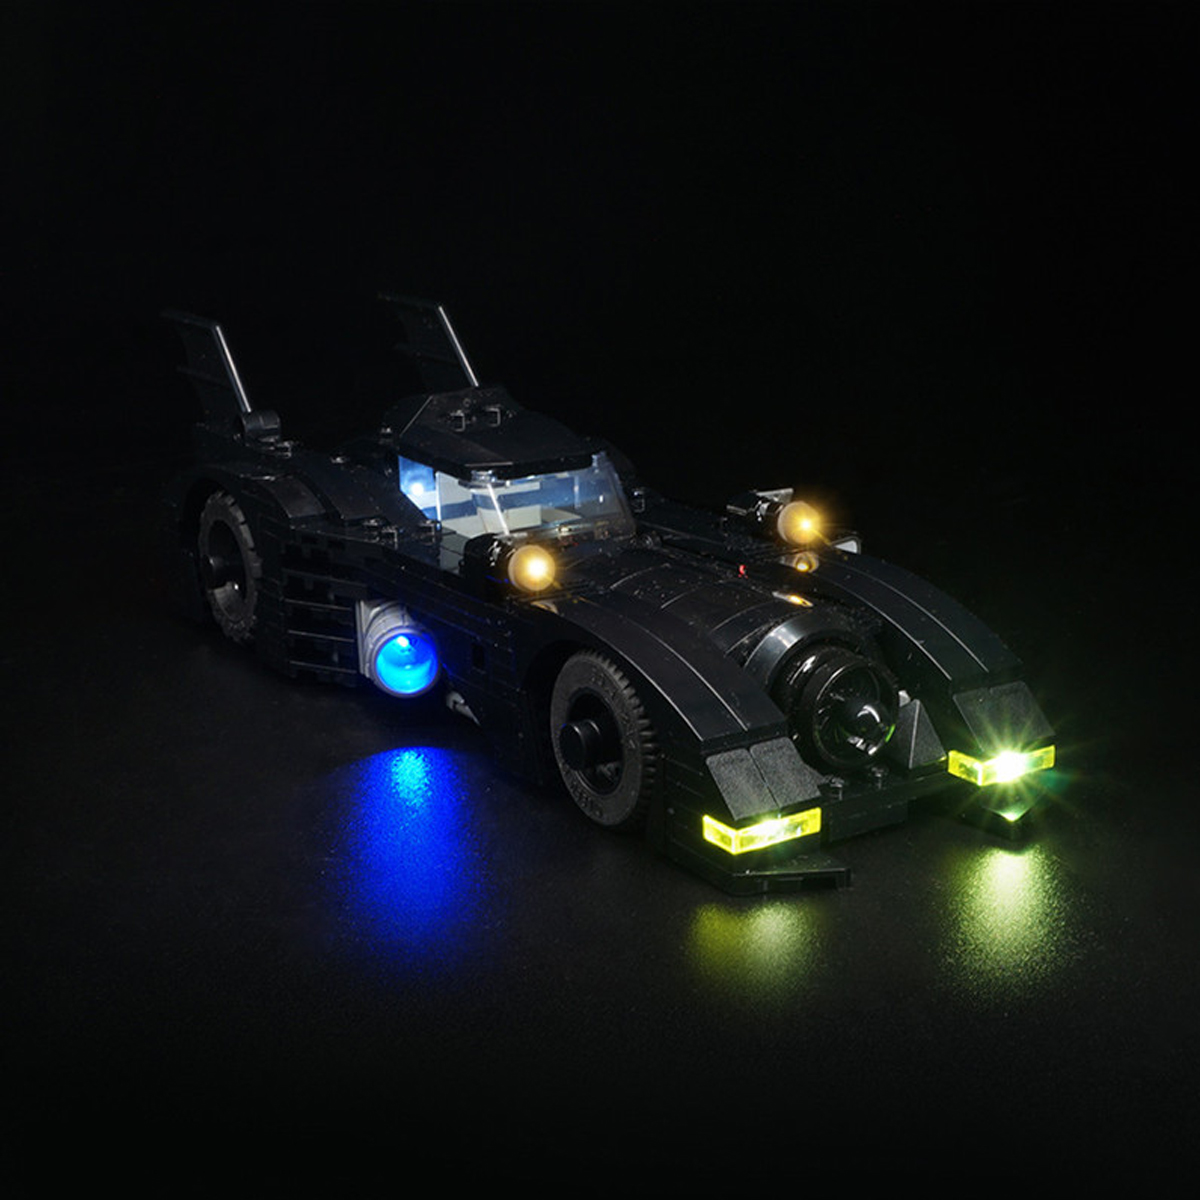 DIY-LED-Light-Lighting-Kit-ONLY-For-LEGO-40433-1989-BatMobile-Mini-Version-Car-Brick-1629831-2